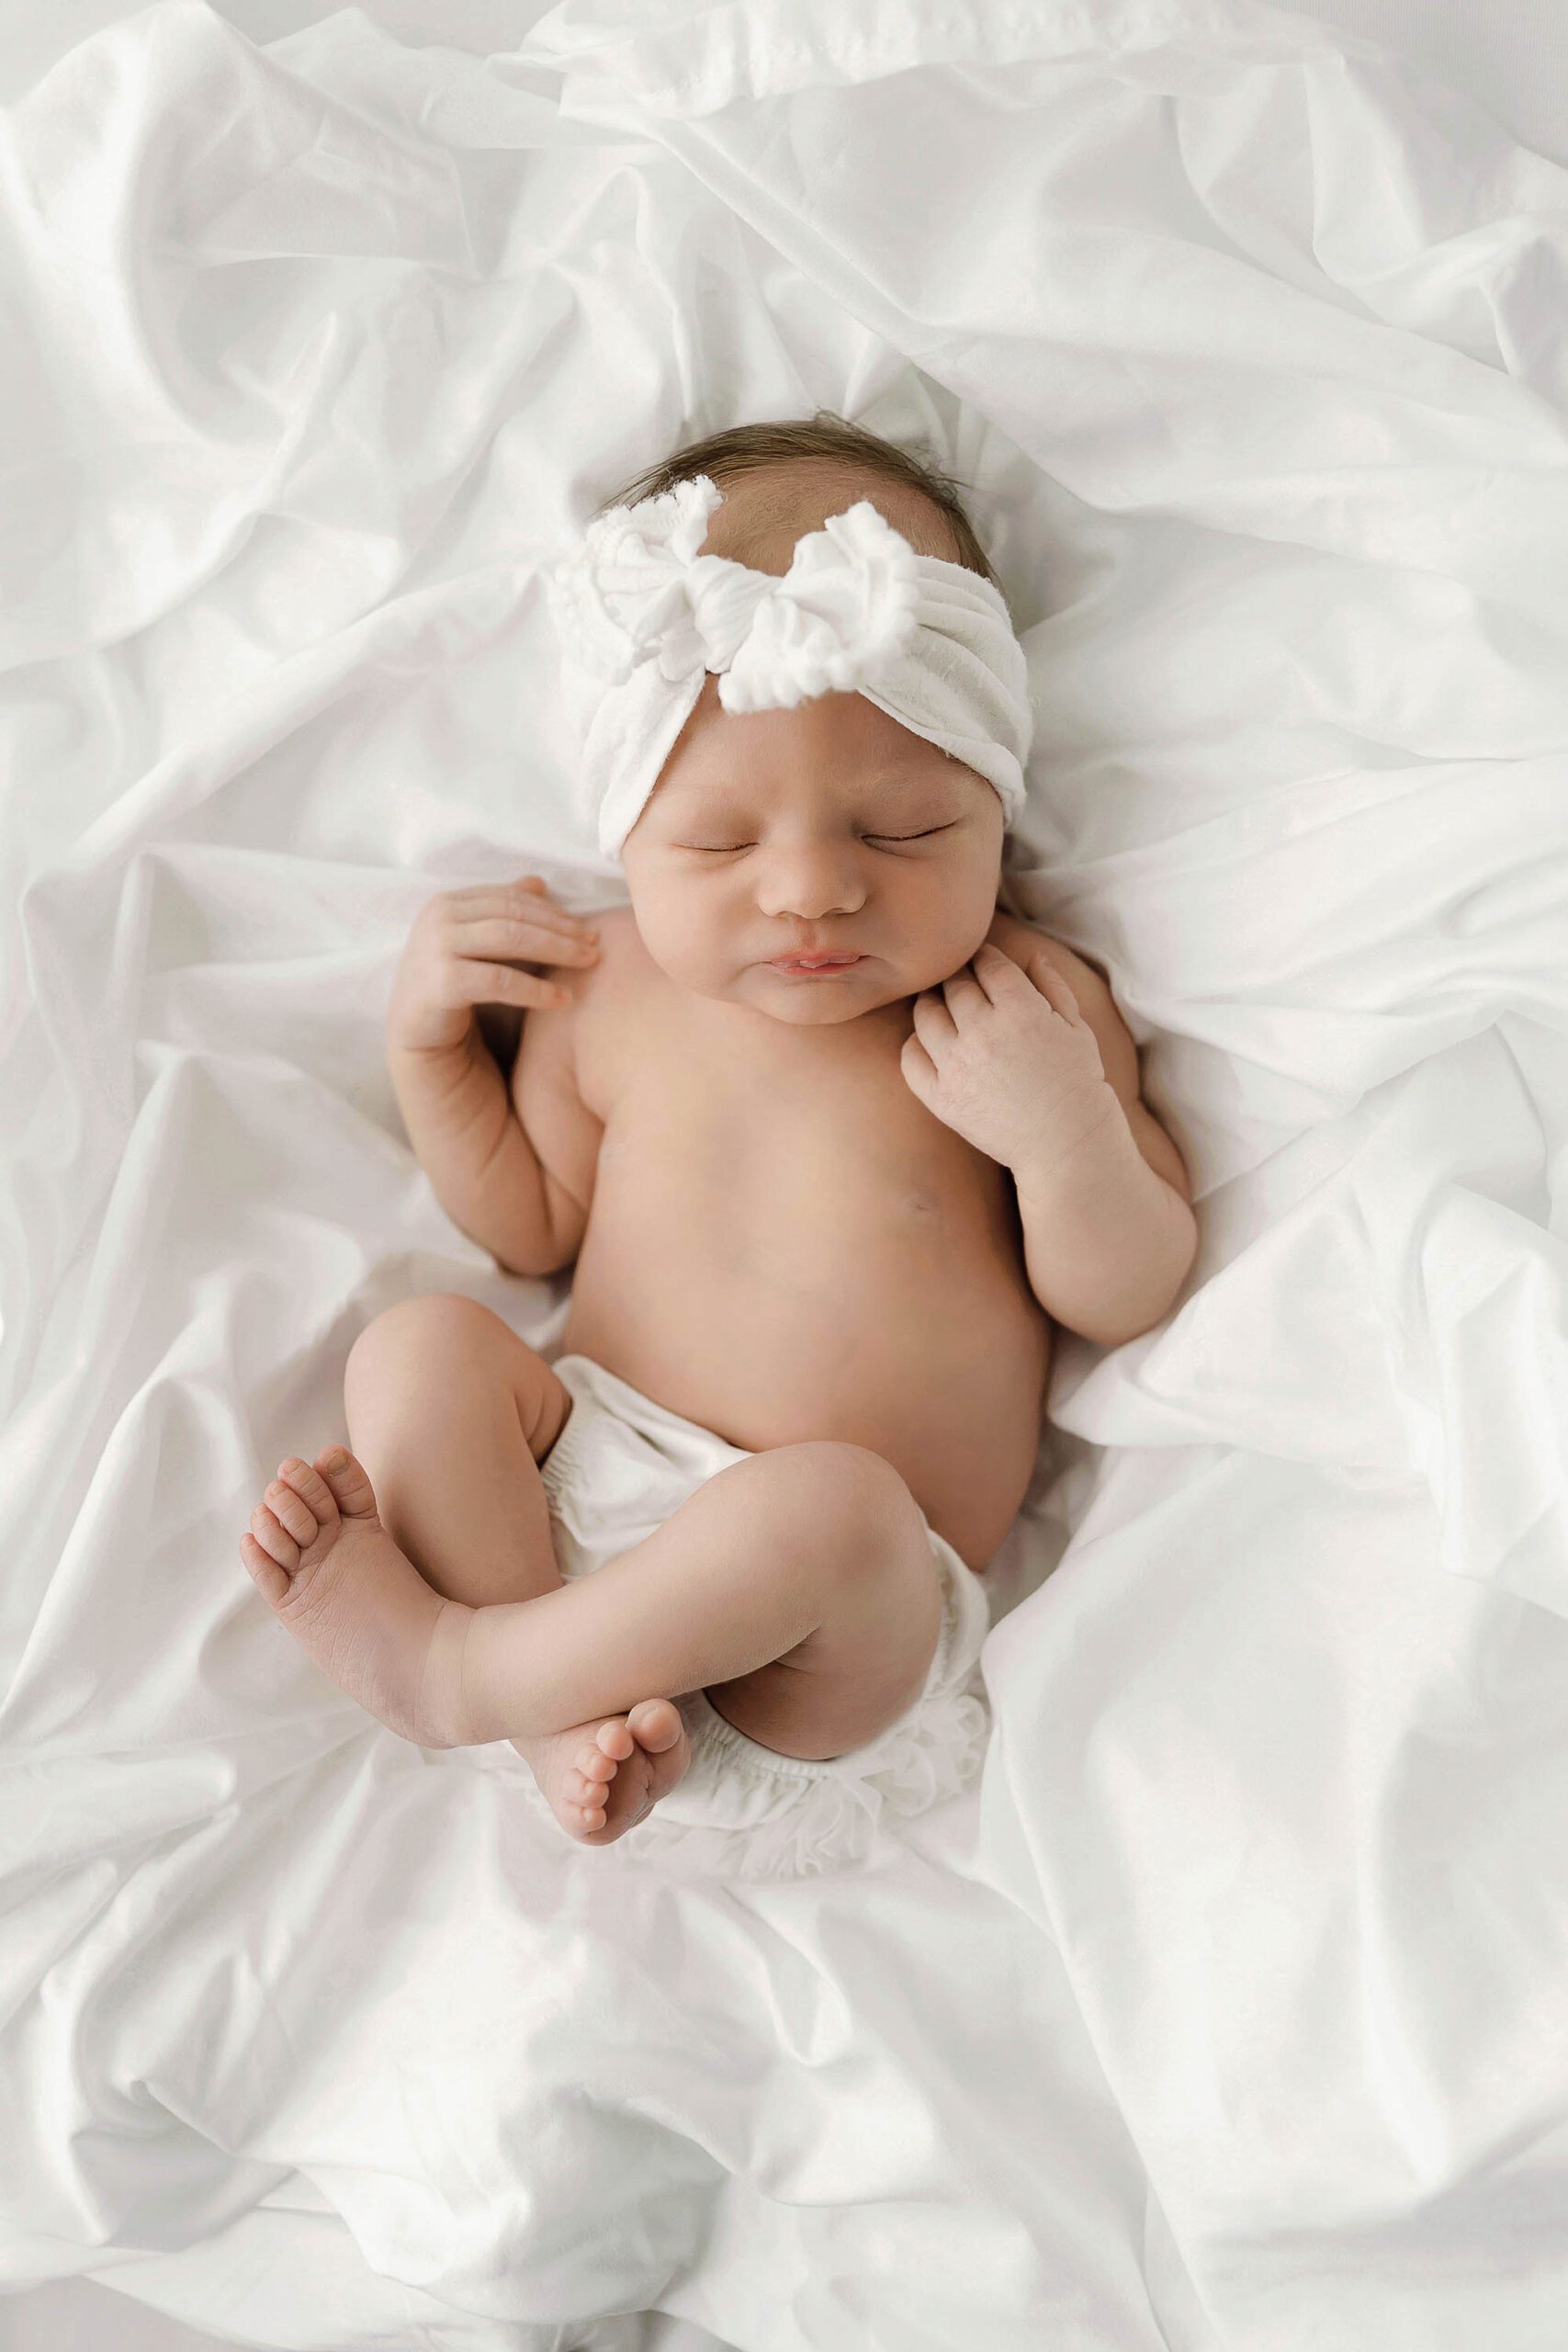 Murrieta baby photography